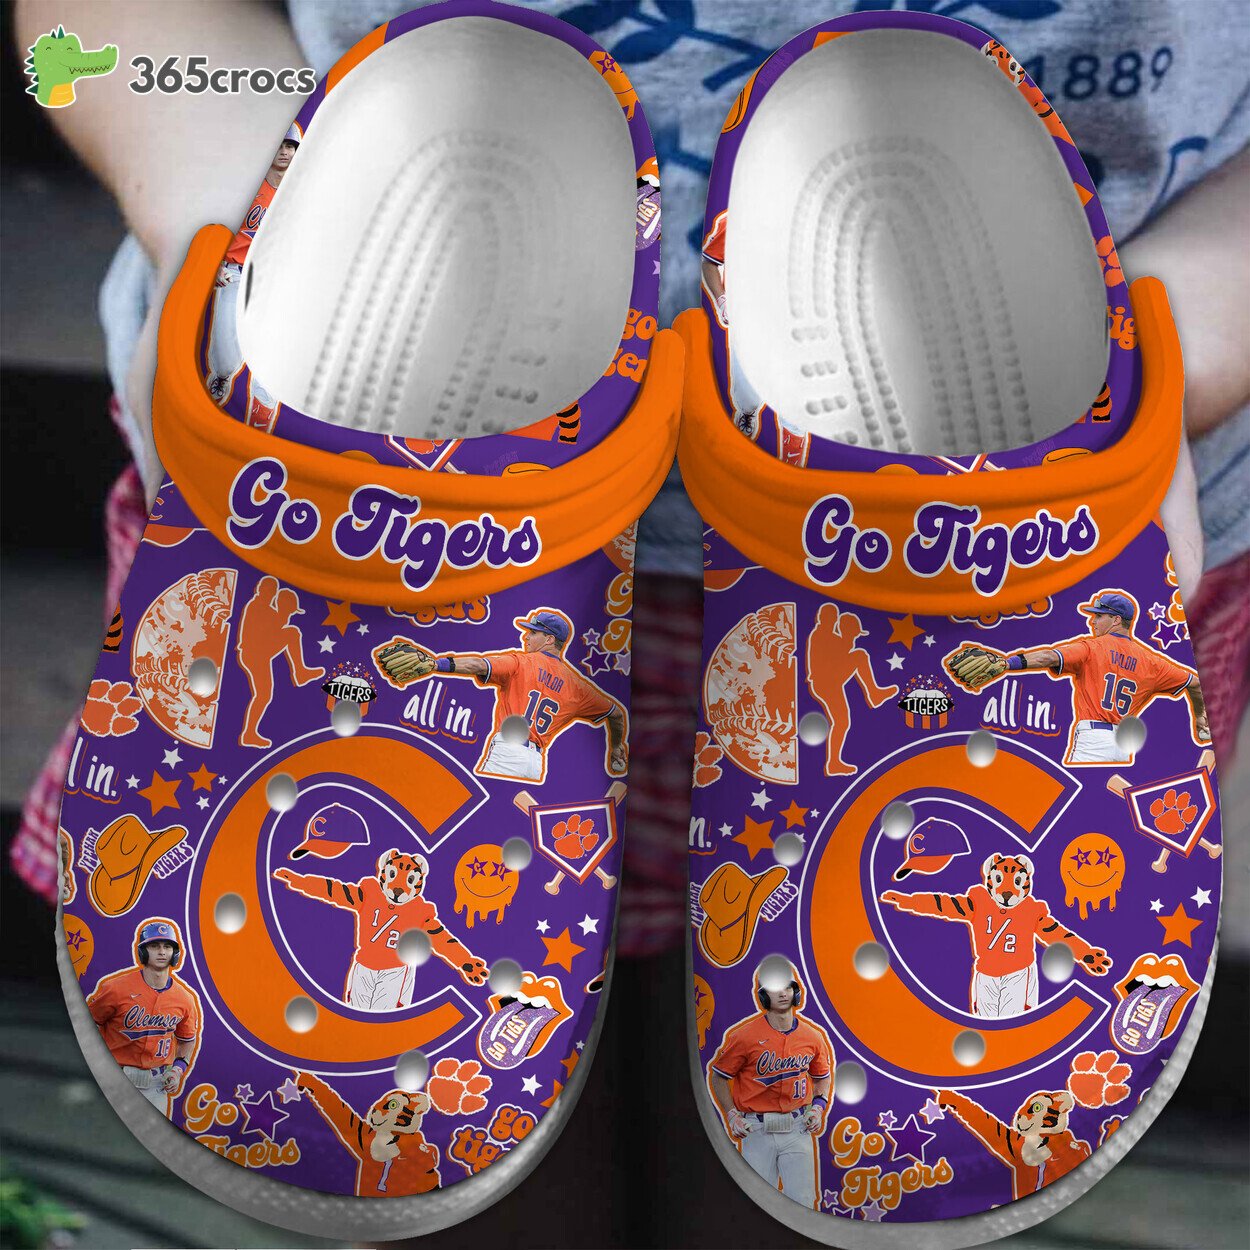 Clemson Tigers NCAA Premium Sport Comfortable Clogs Crocss Shoes